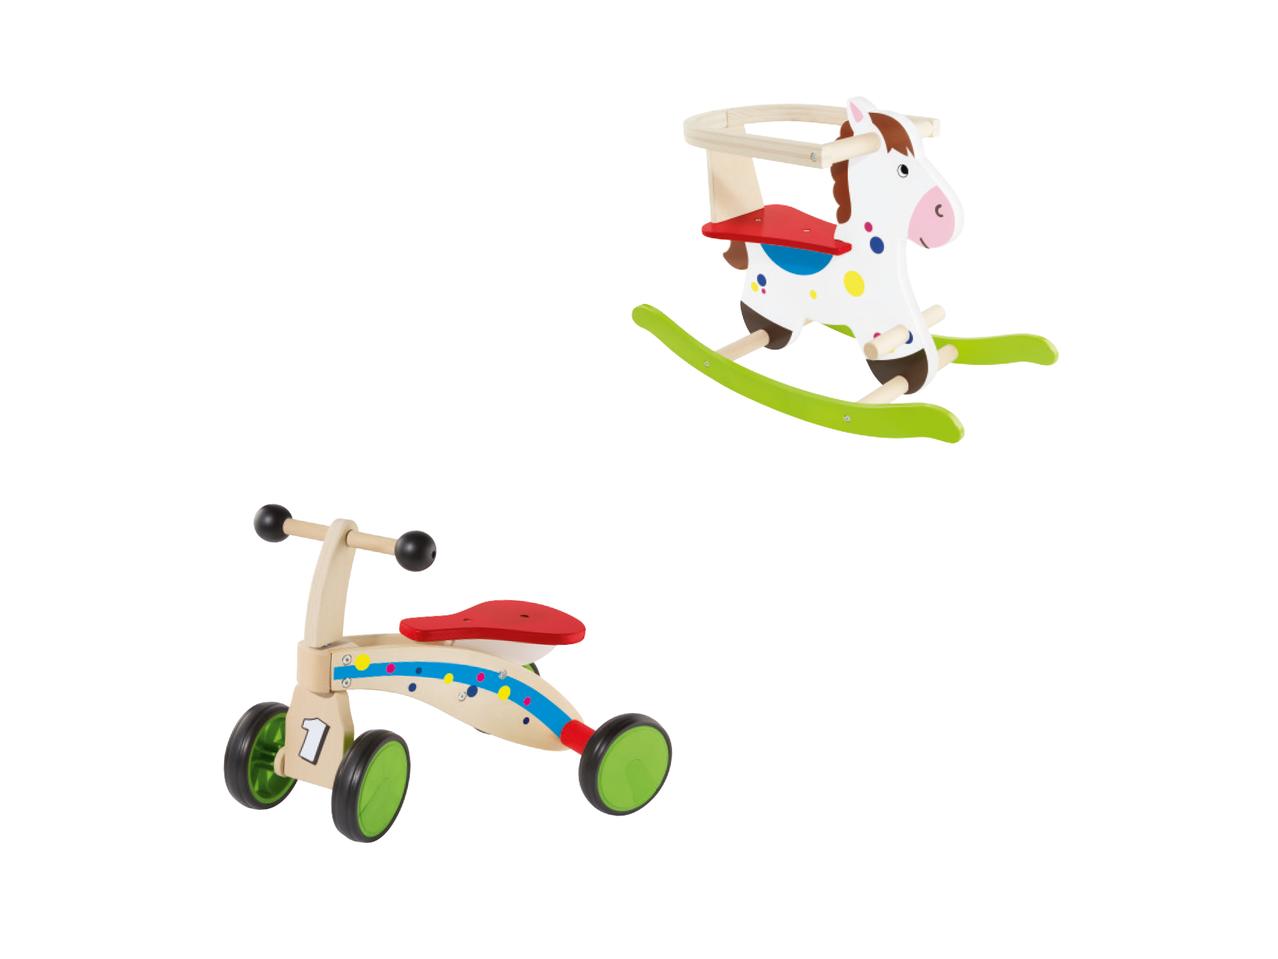 PLAYTIVE JUNIOR(R) Wooden Trike/ Rocking Horse